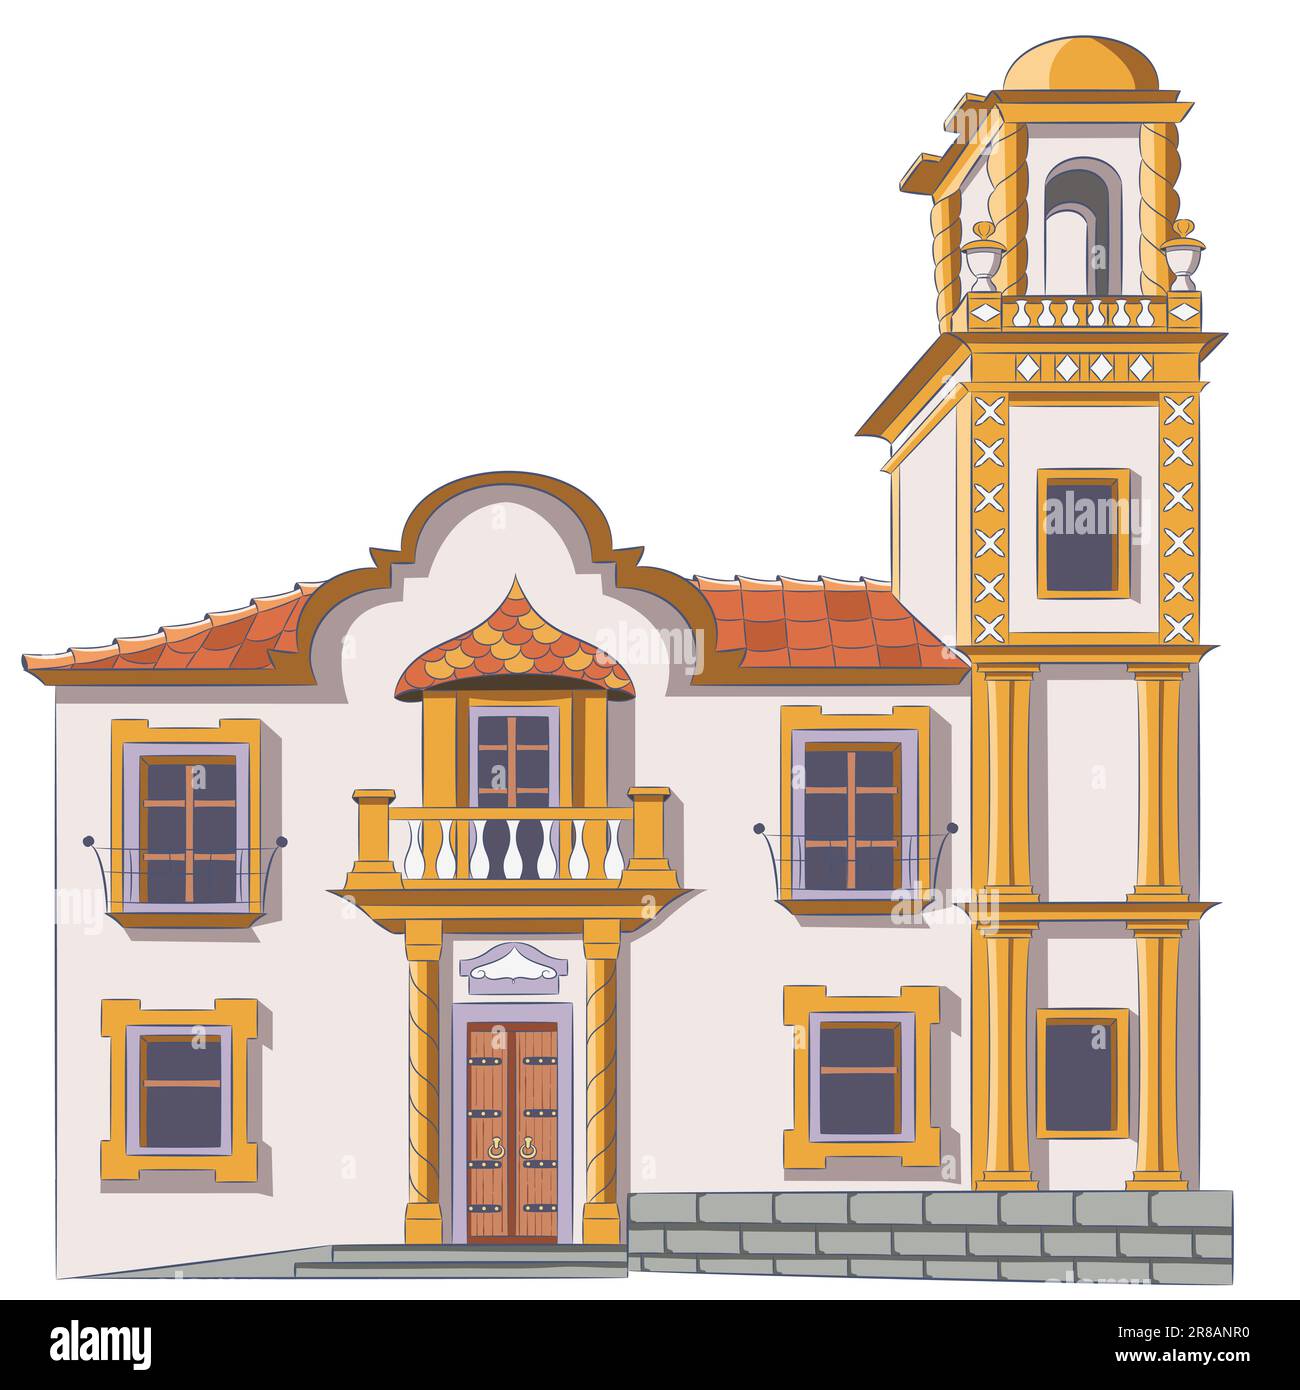 Ancienne église catholique traditionnelle en pierre avec un clocher dans la ville de Cadix. Espagne. Andalousie. Illustration de Vecteur